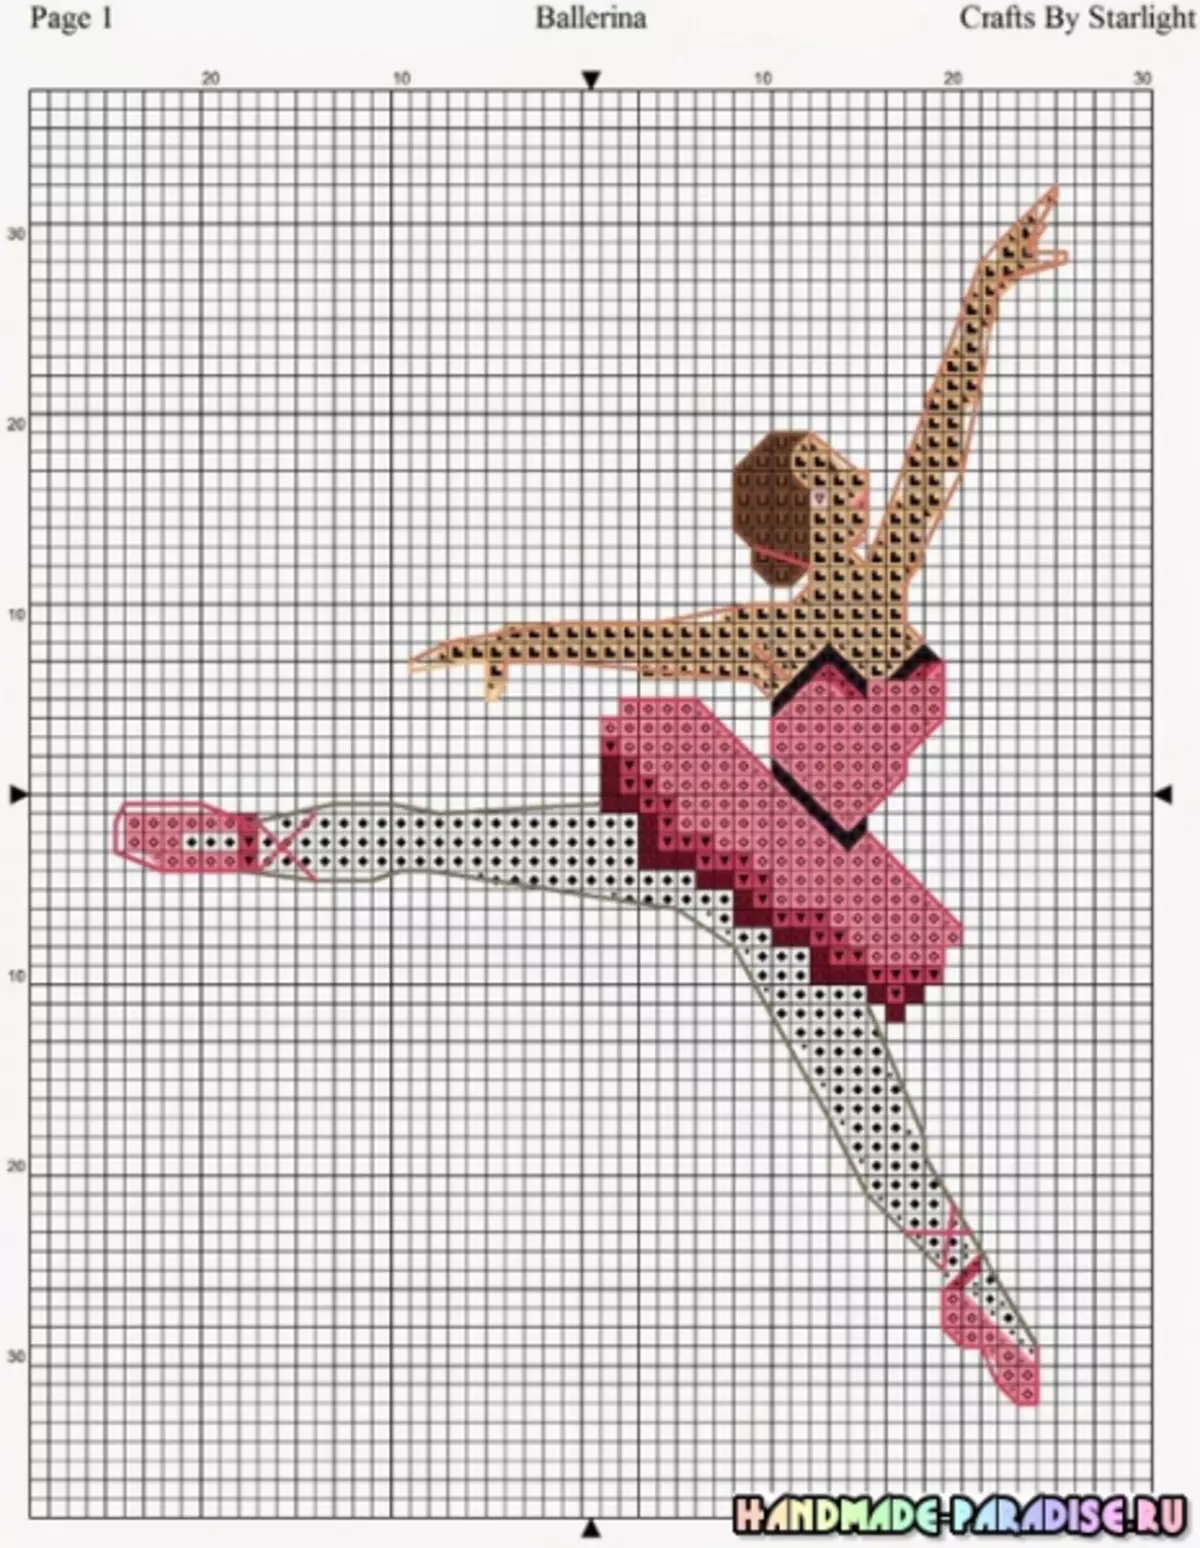 Ballerina na wachezaji - Mipango ya Msalaba Embroidery.